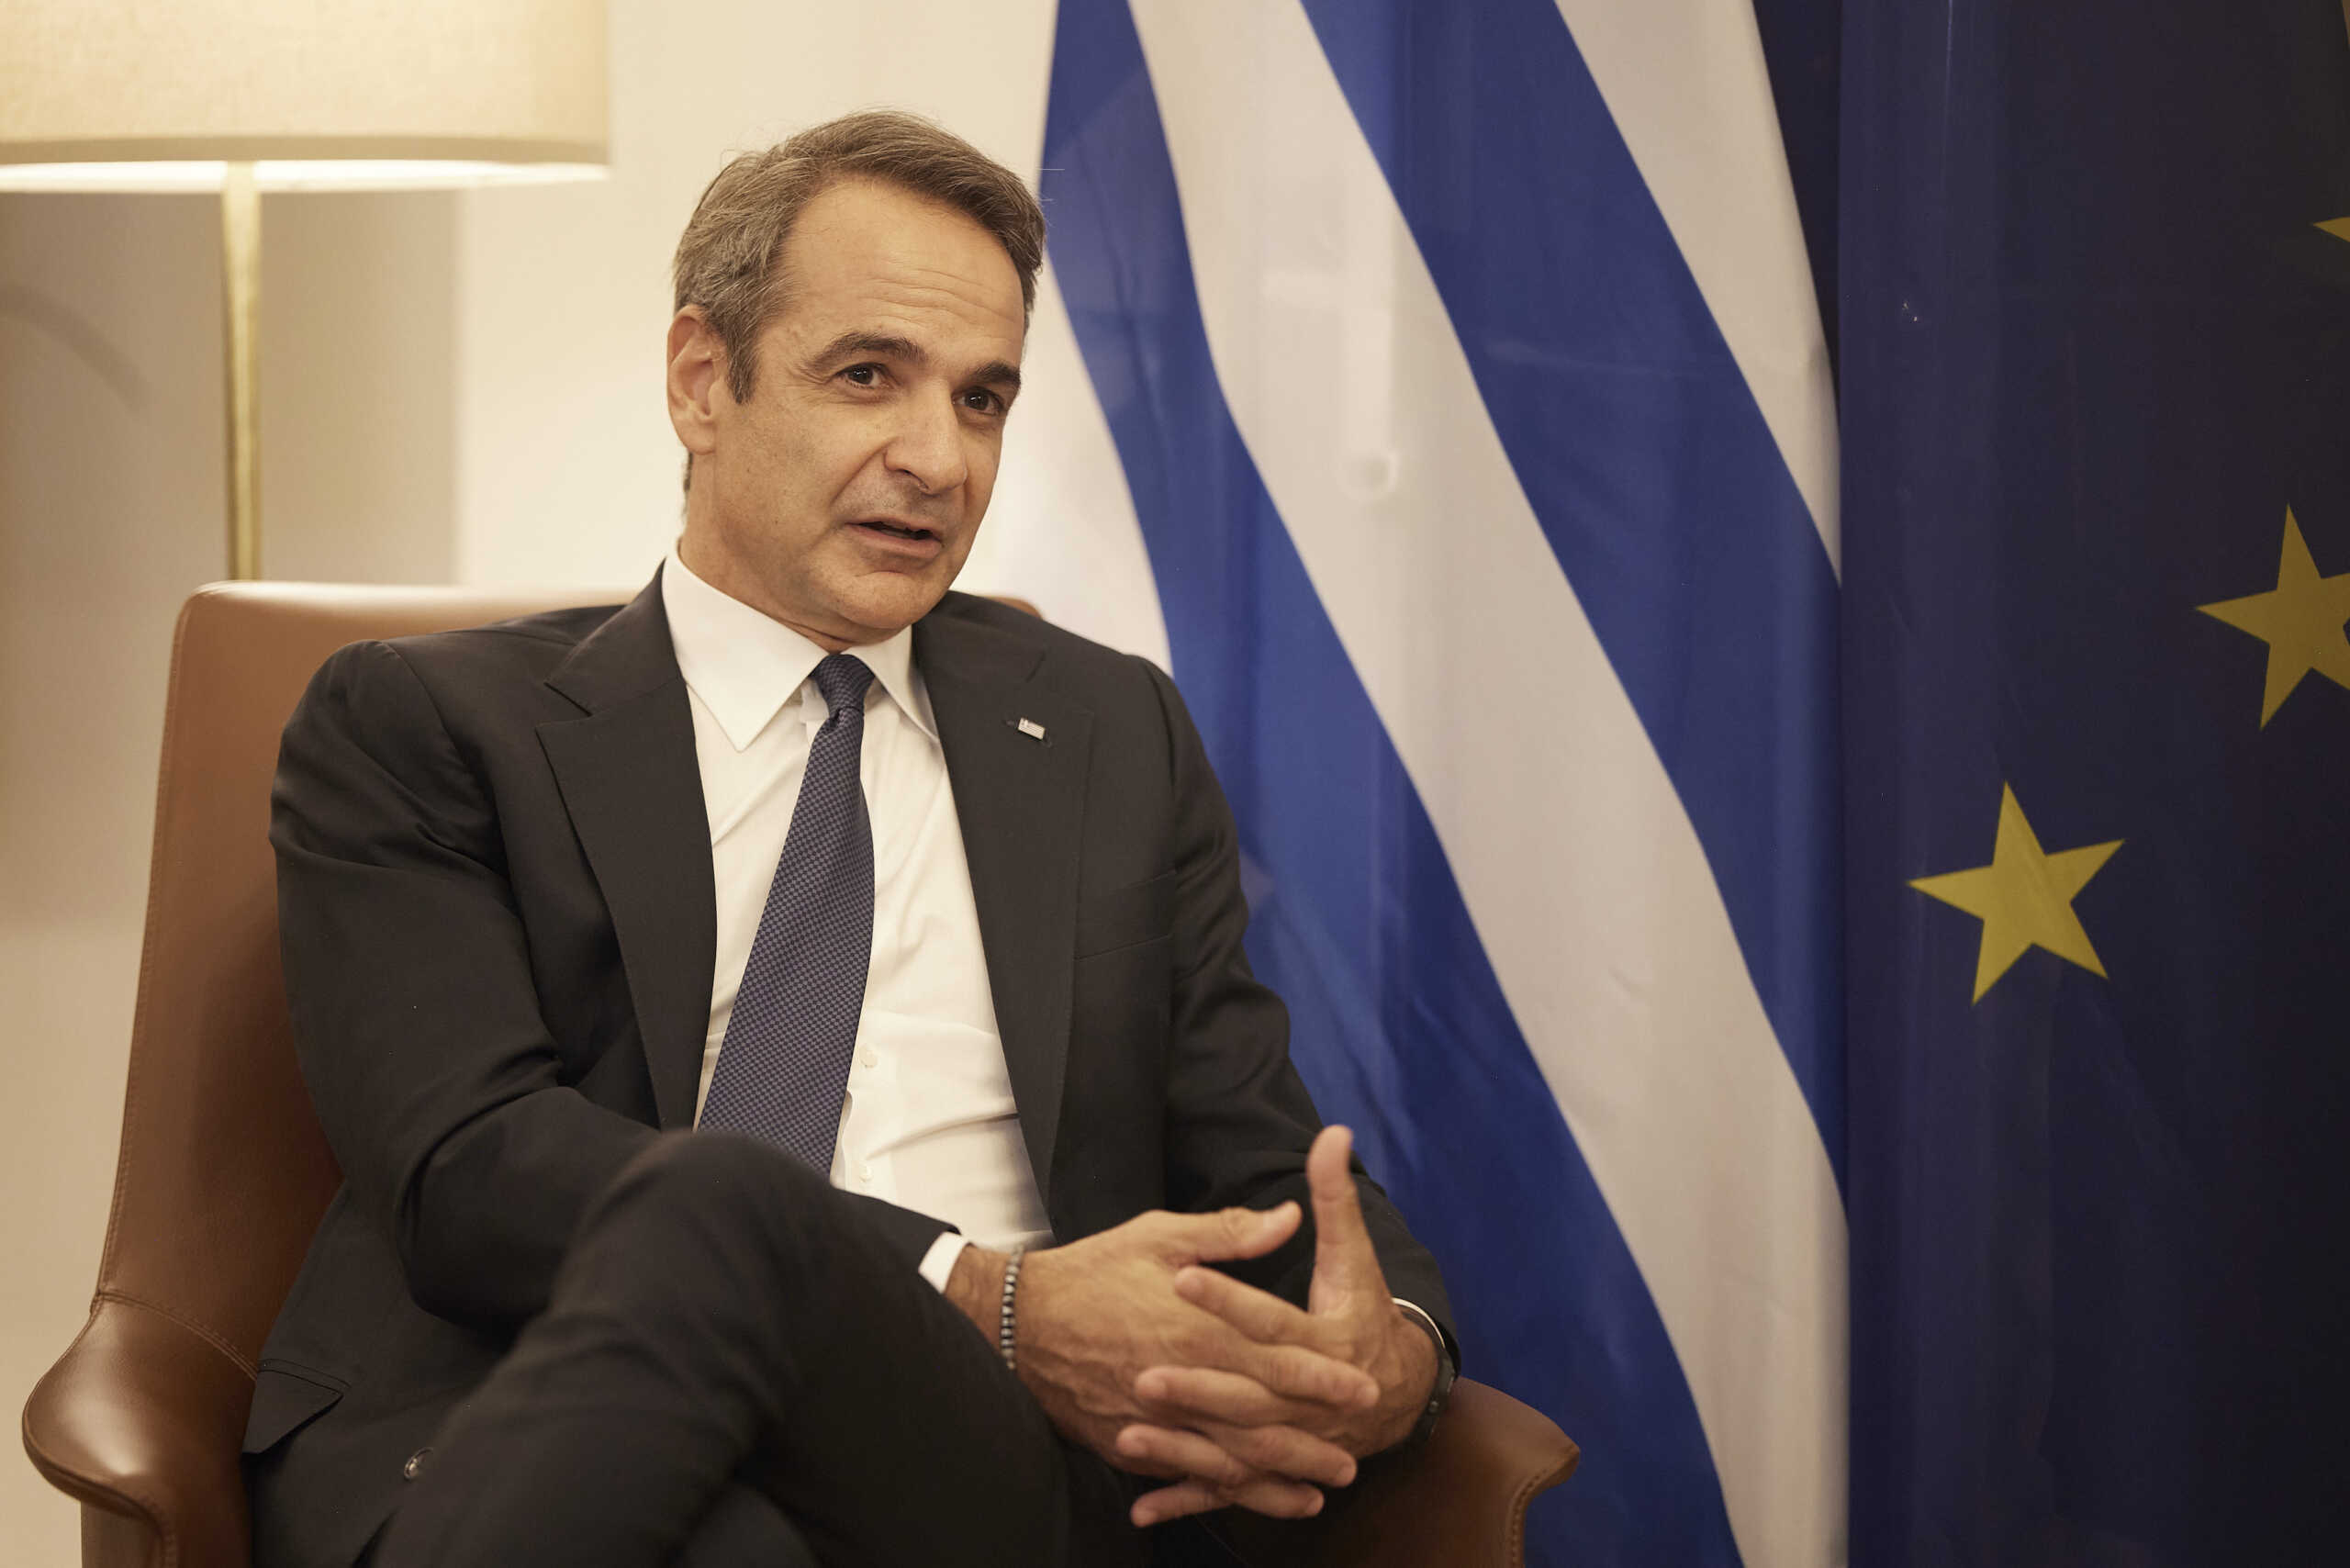 ΕΕ: «Κλειδώνει» ο Επίτροπος της Ελλάδας στην Κομισιόν – Οι αινιγματικές δηλώσεις Μητσοτάκη και το «φαβορί»